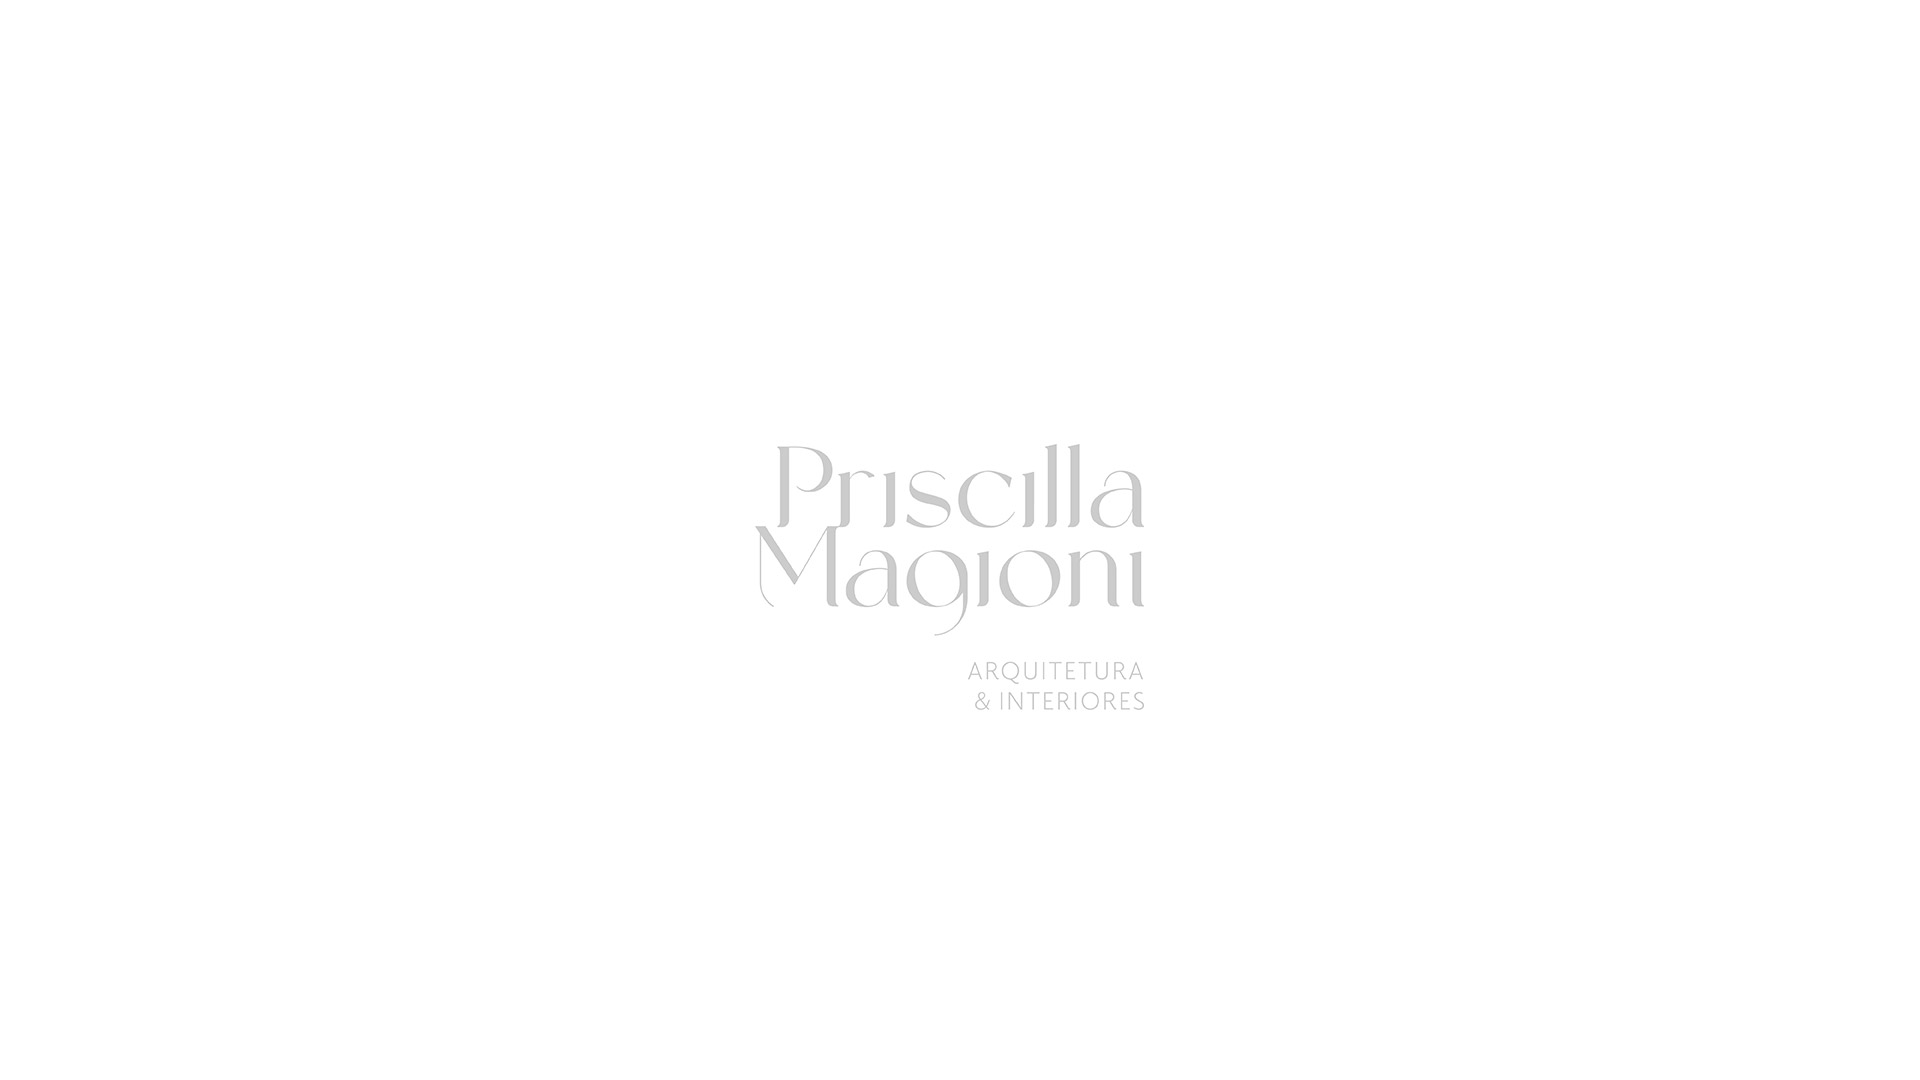 Priscilla-Magioni13